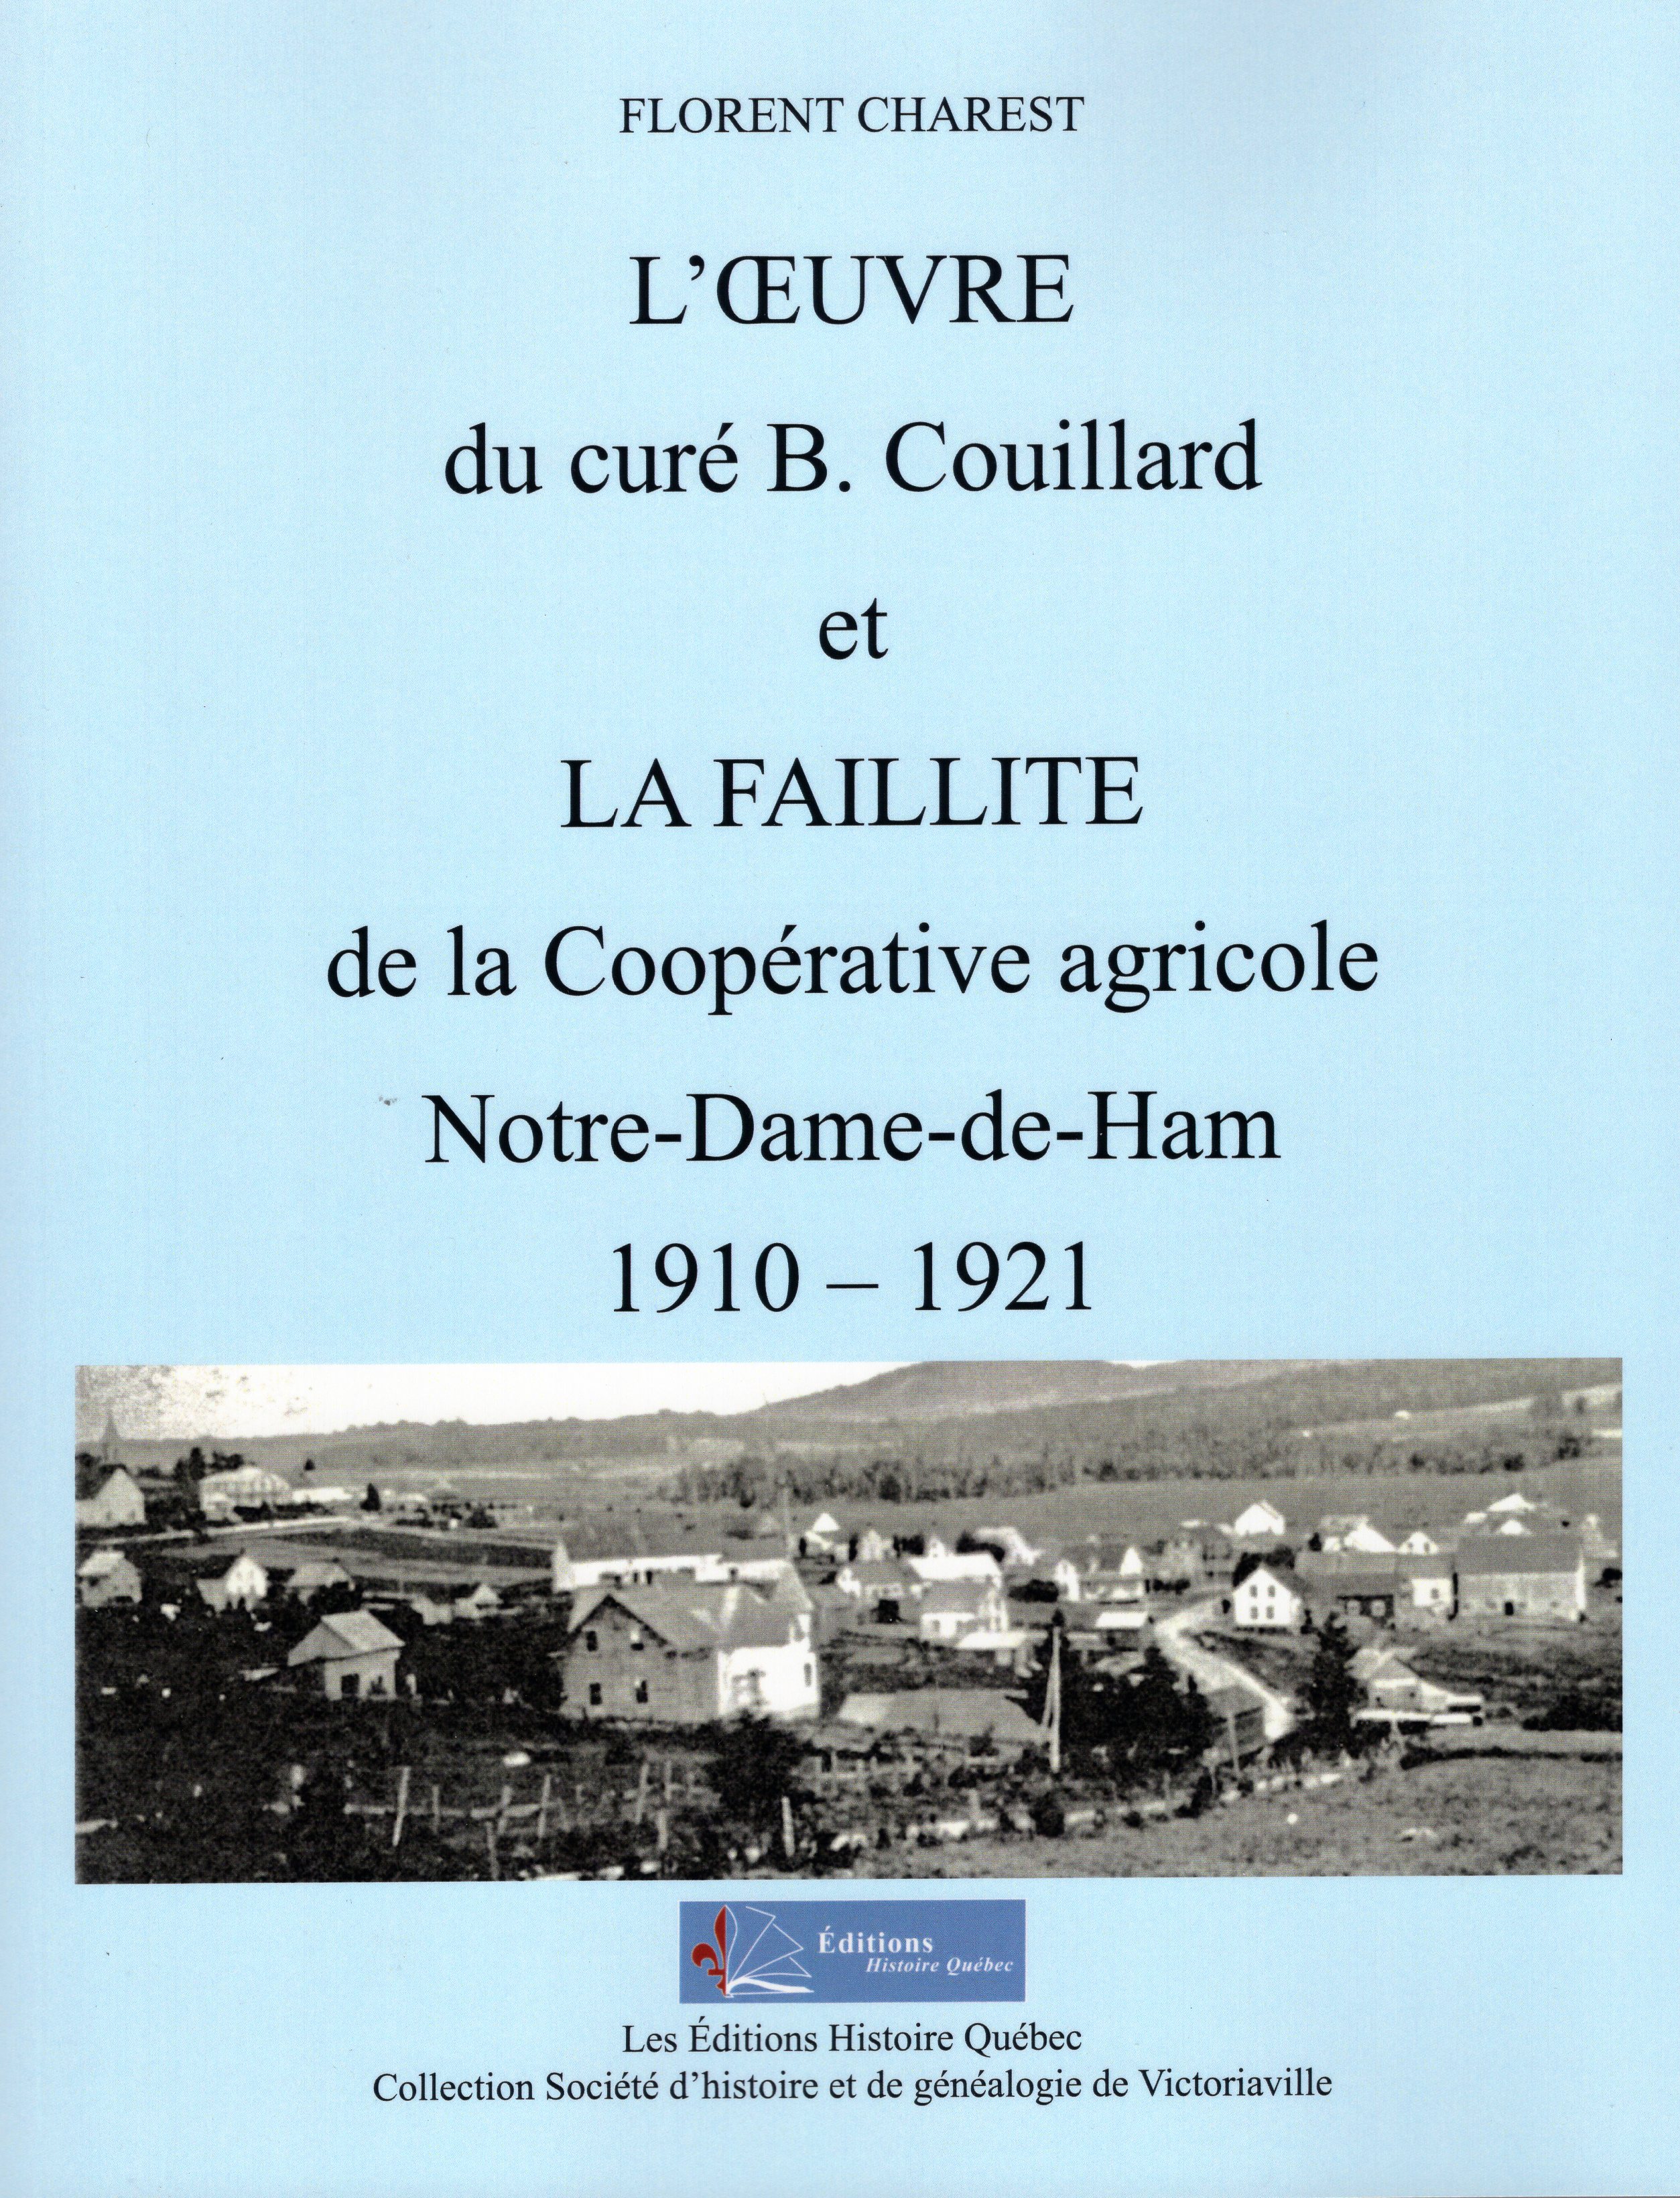 L'oeuvre du curé B. Couillard et la faillite de la Coopérative agricole. Notre-Dame-de-Ham. 1910-1921